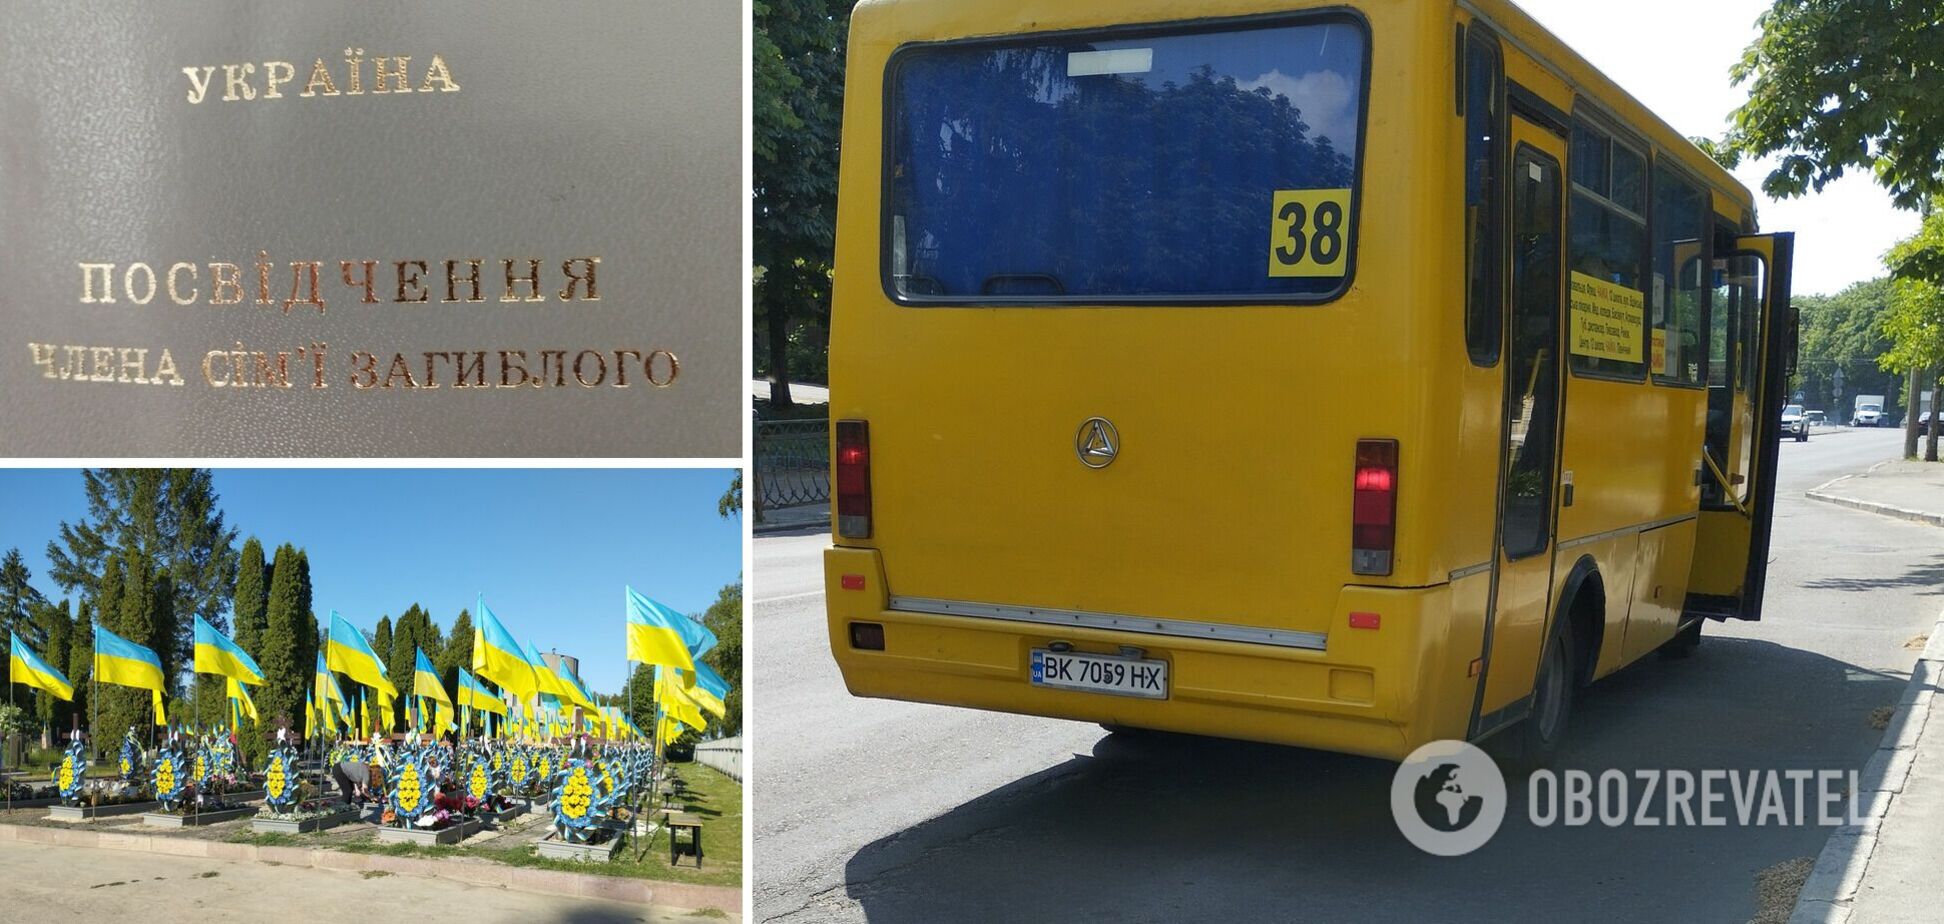 'Развелось вас здесь': в Ривне водитель маршрутки высказал презрение матери погибшего защитника Украины. Фото